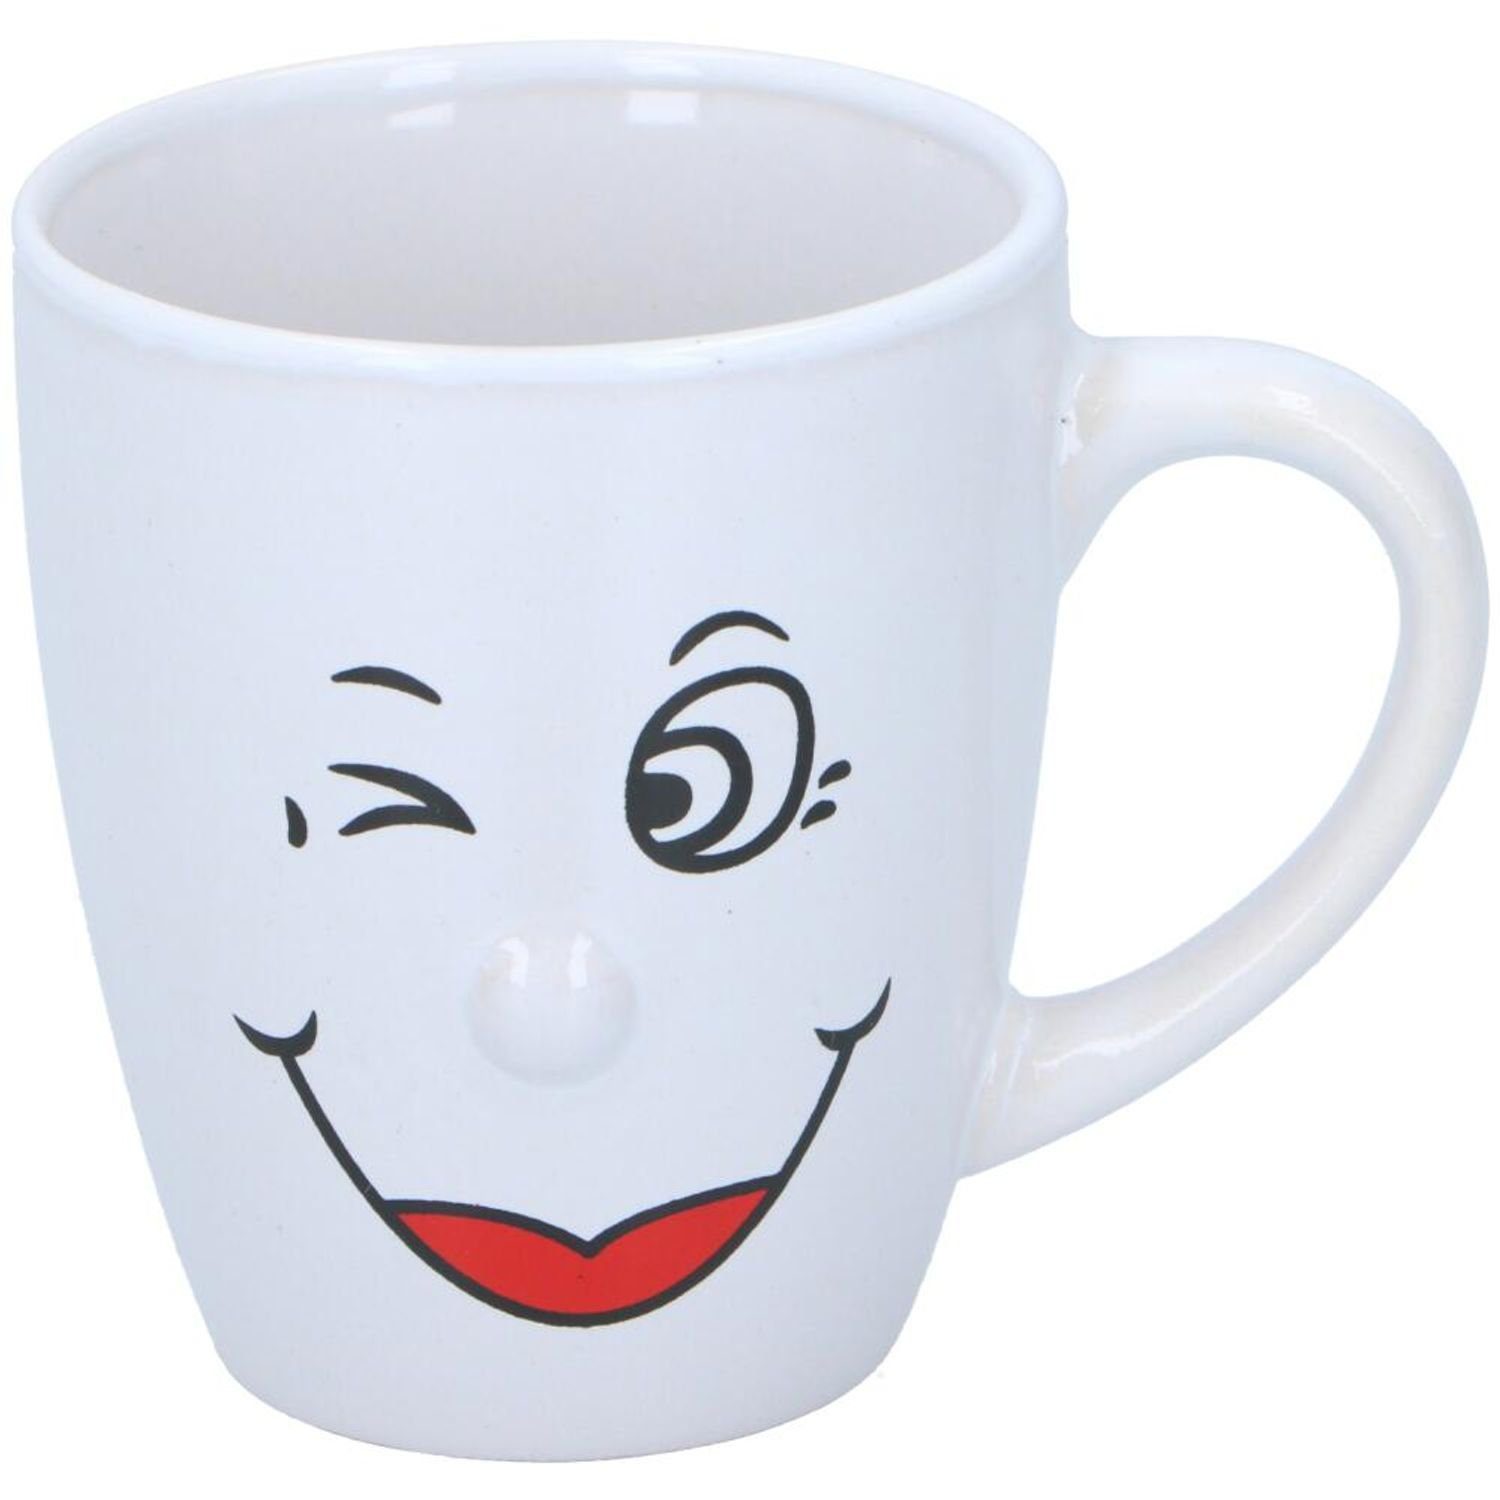 EDCO Tasse 24 Stück Kaffeebecher Smile 150ml Teetassen lustig Gesicht verschieden, Keramik